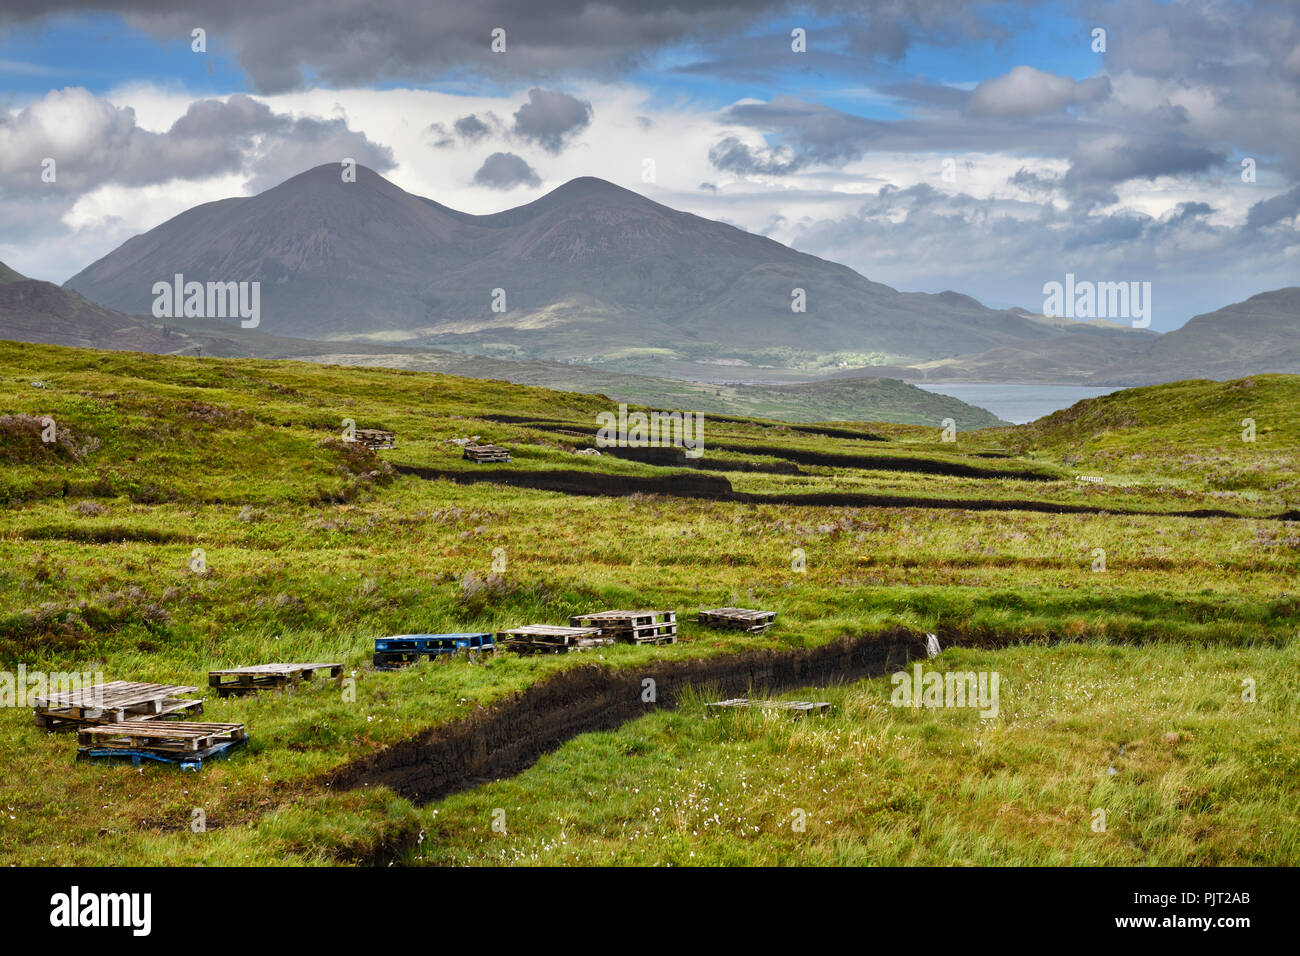 Gräben geschnitten in tiefe Torf der Moore in der Nähe von Feuchtgebieten Drinan auf der Isle of Skye Schottland mit Loch Slap und Beinn Na Caillich Berg Stockfoto